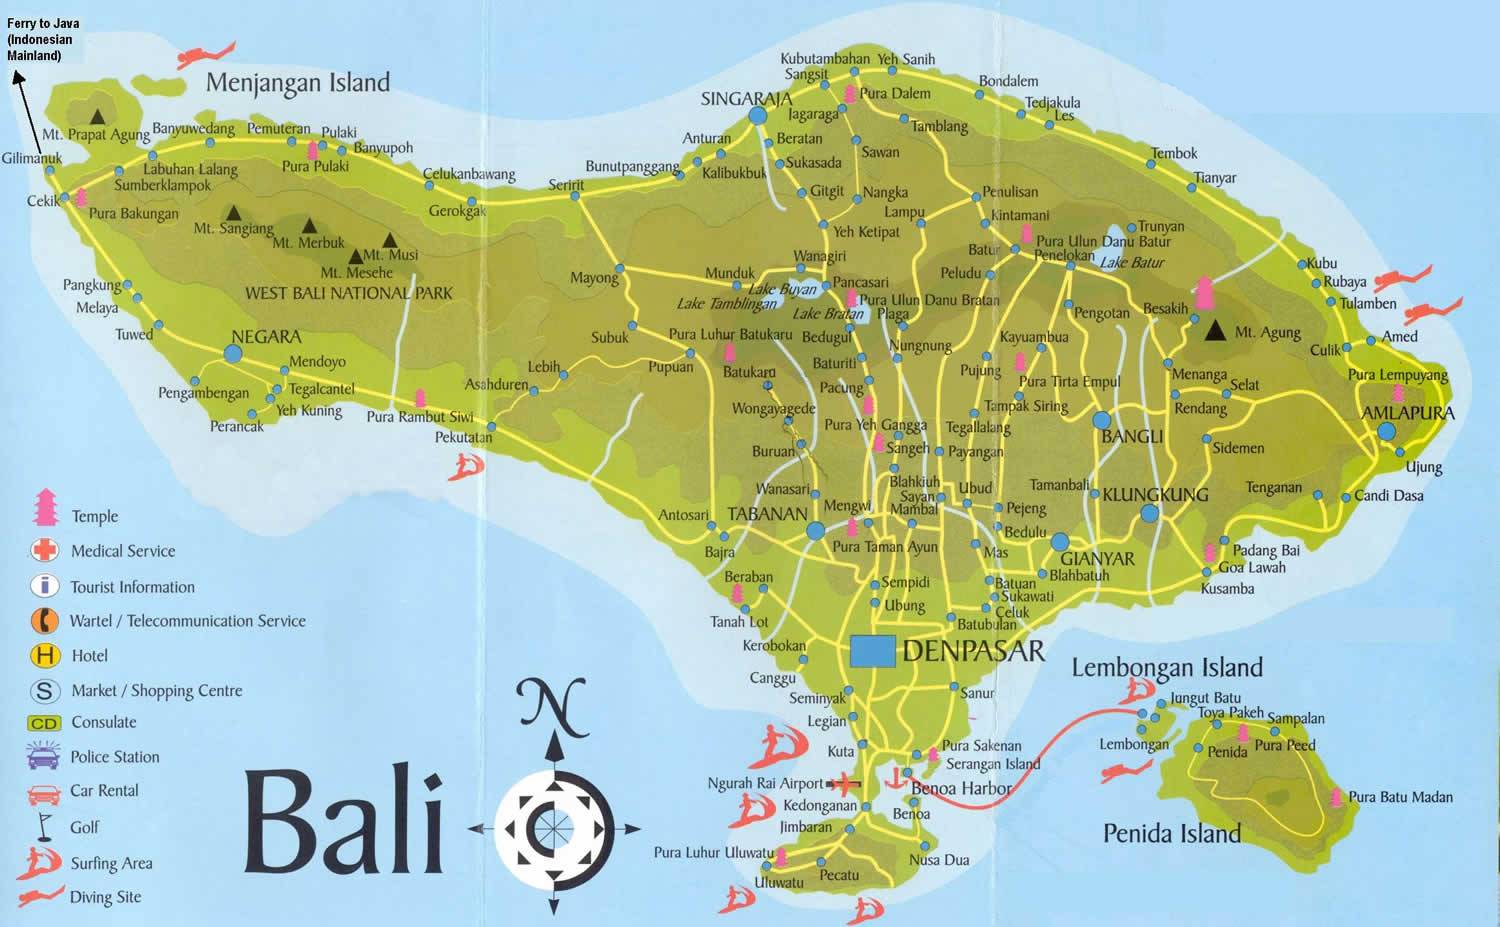 bali tourism map pdf